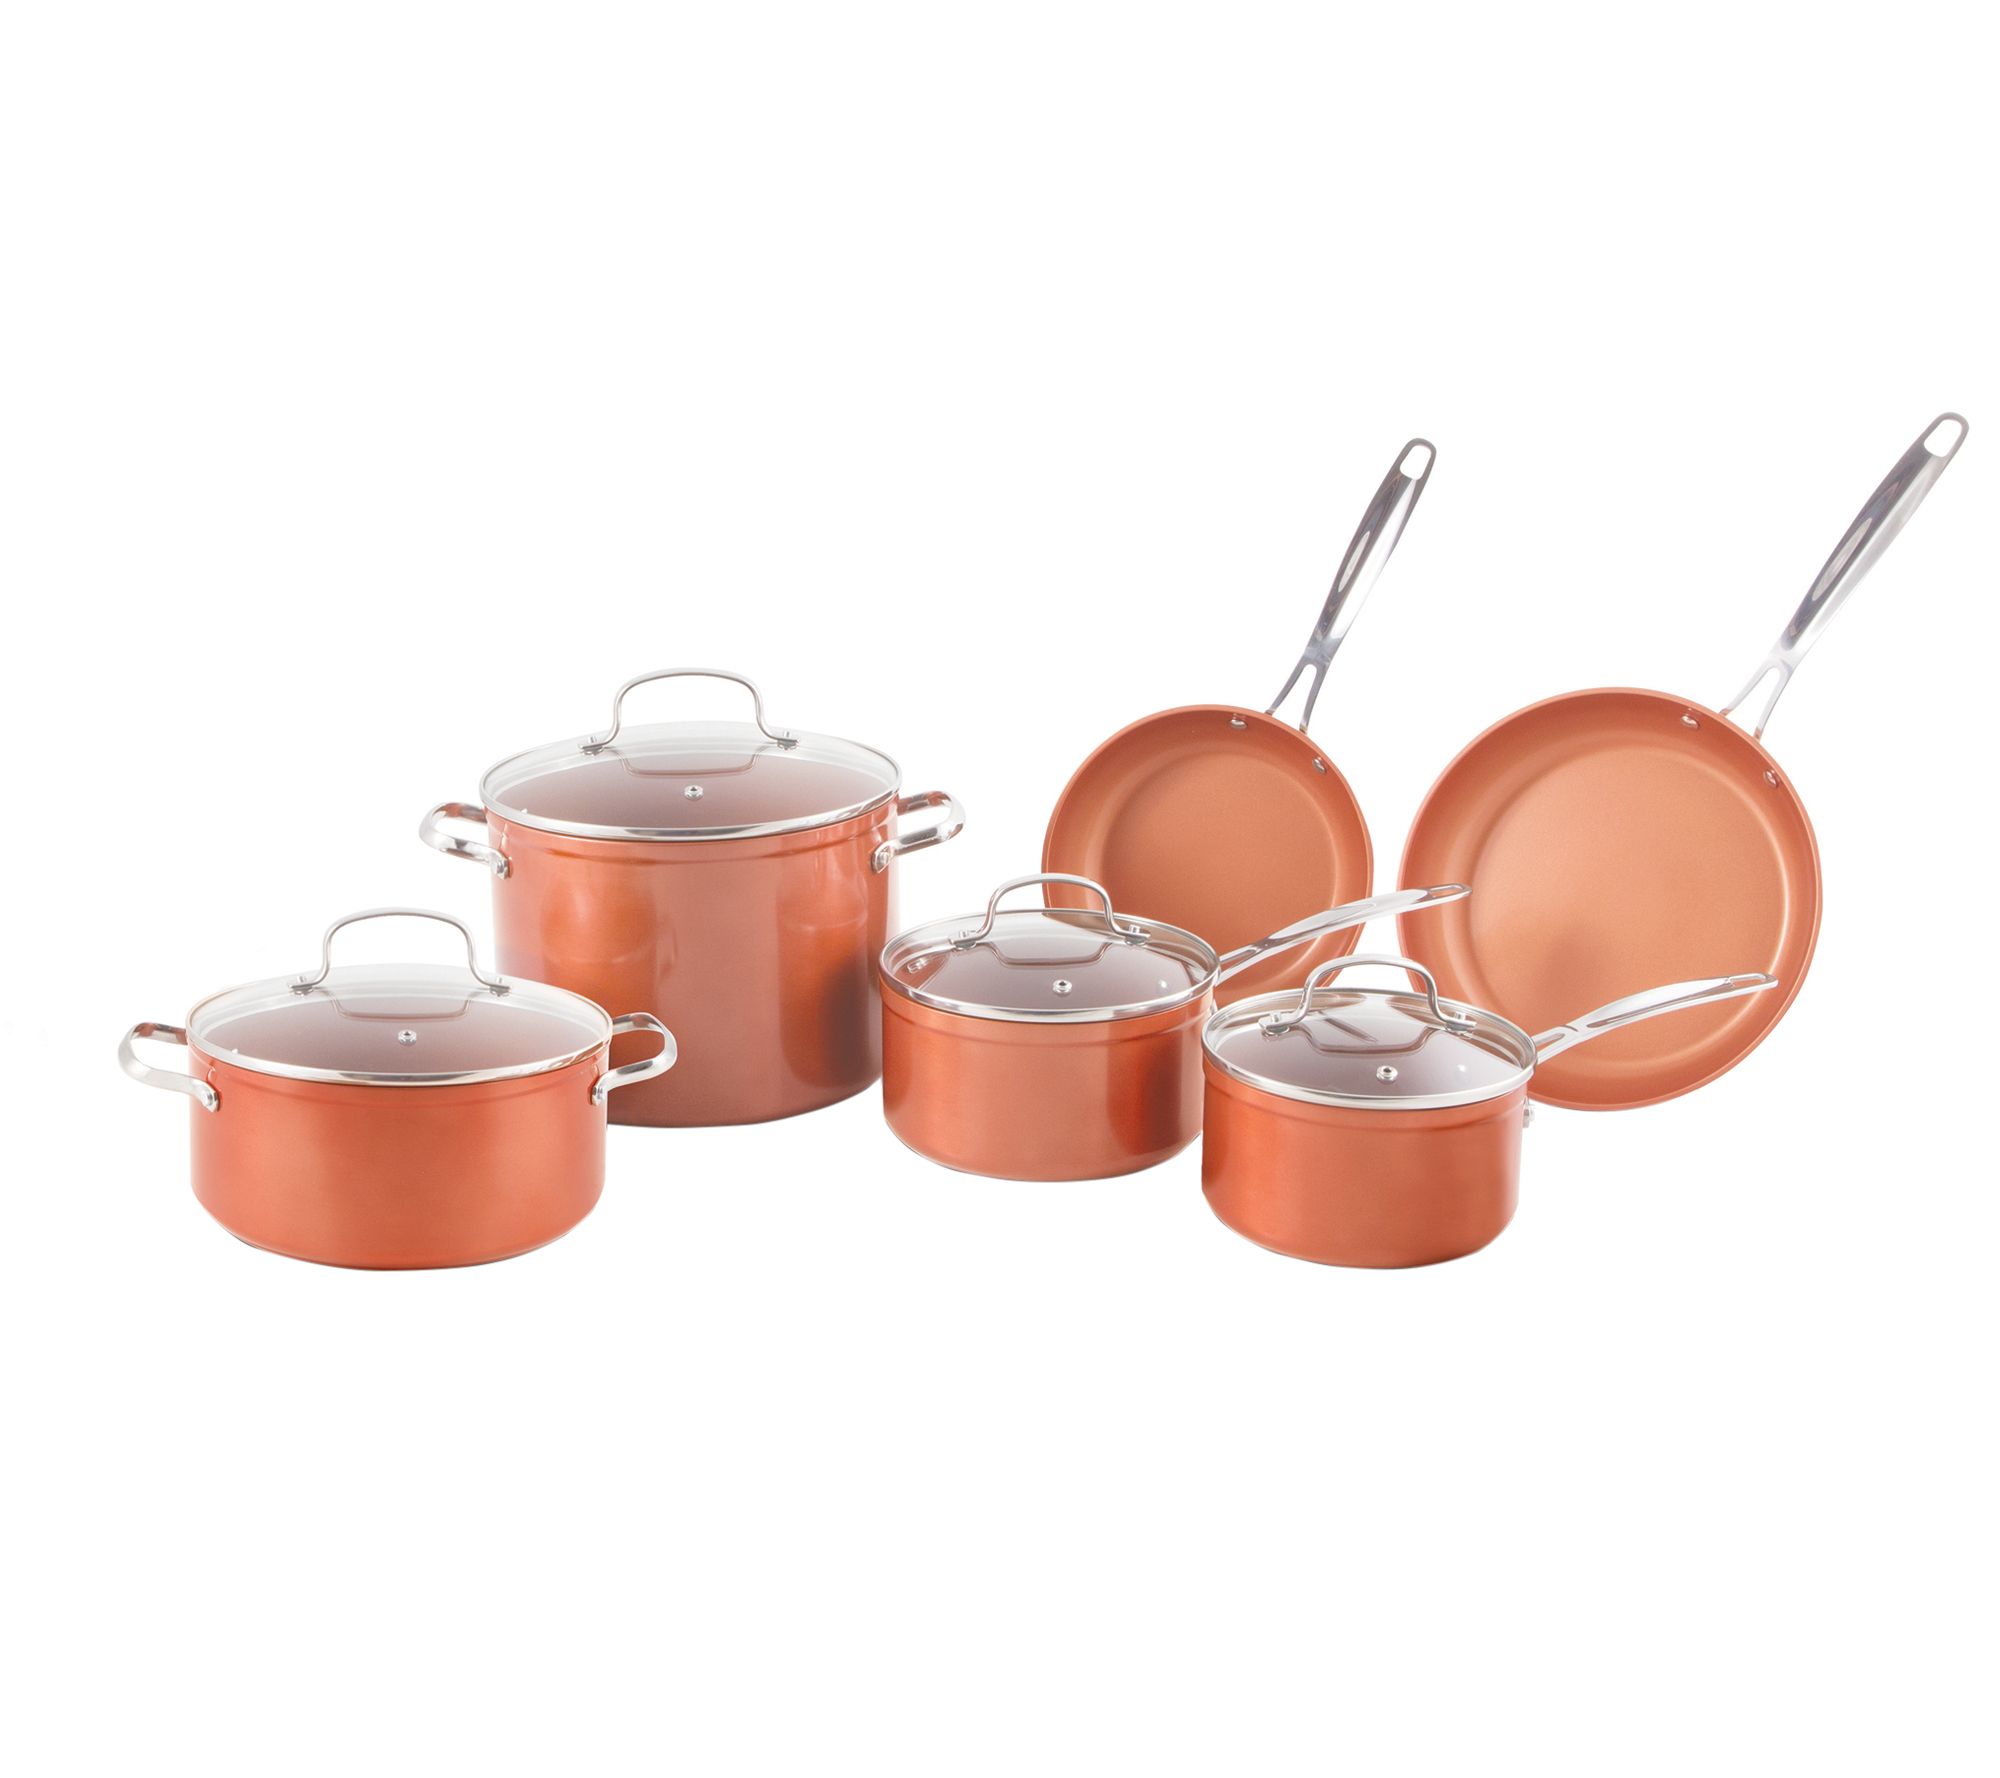 Gourmet Edge - 6pc Copper Ceramic Nonstick Bakeware Set